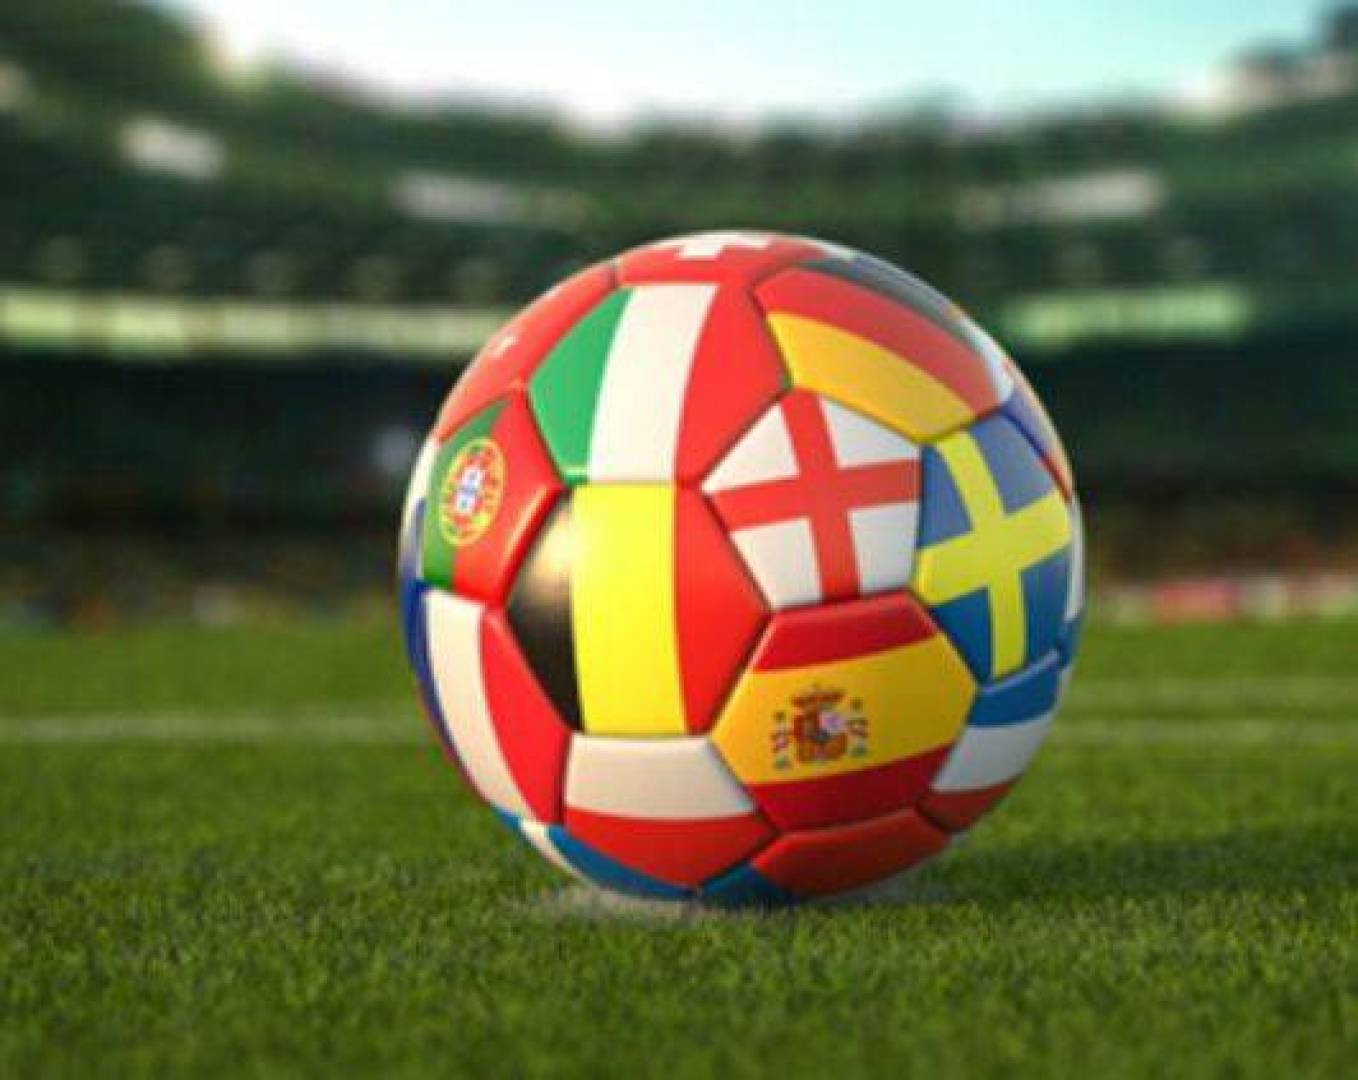 القنوات الناقلة لمباريات اليوم السبت في الملاعب العالمية وموعدها بالتفصيل